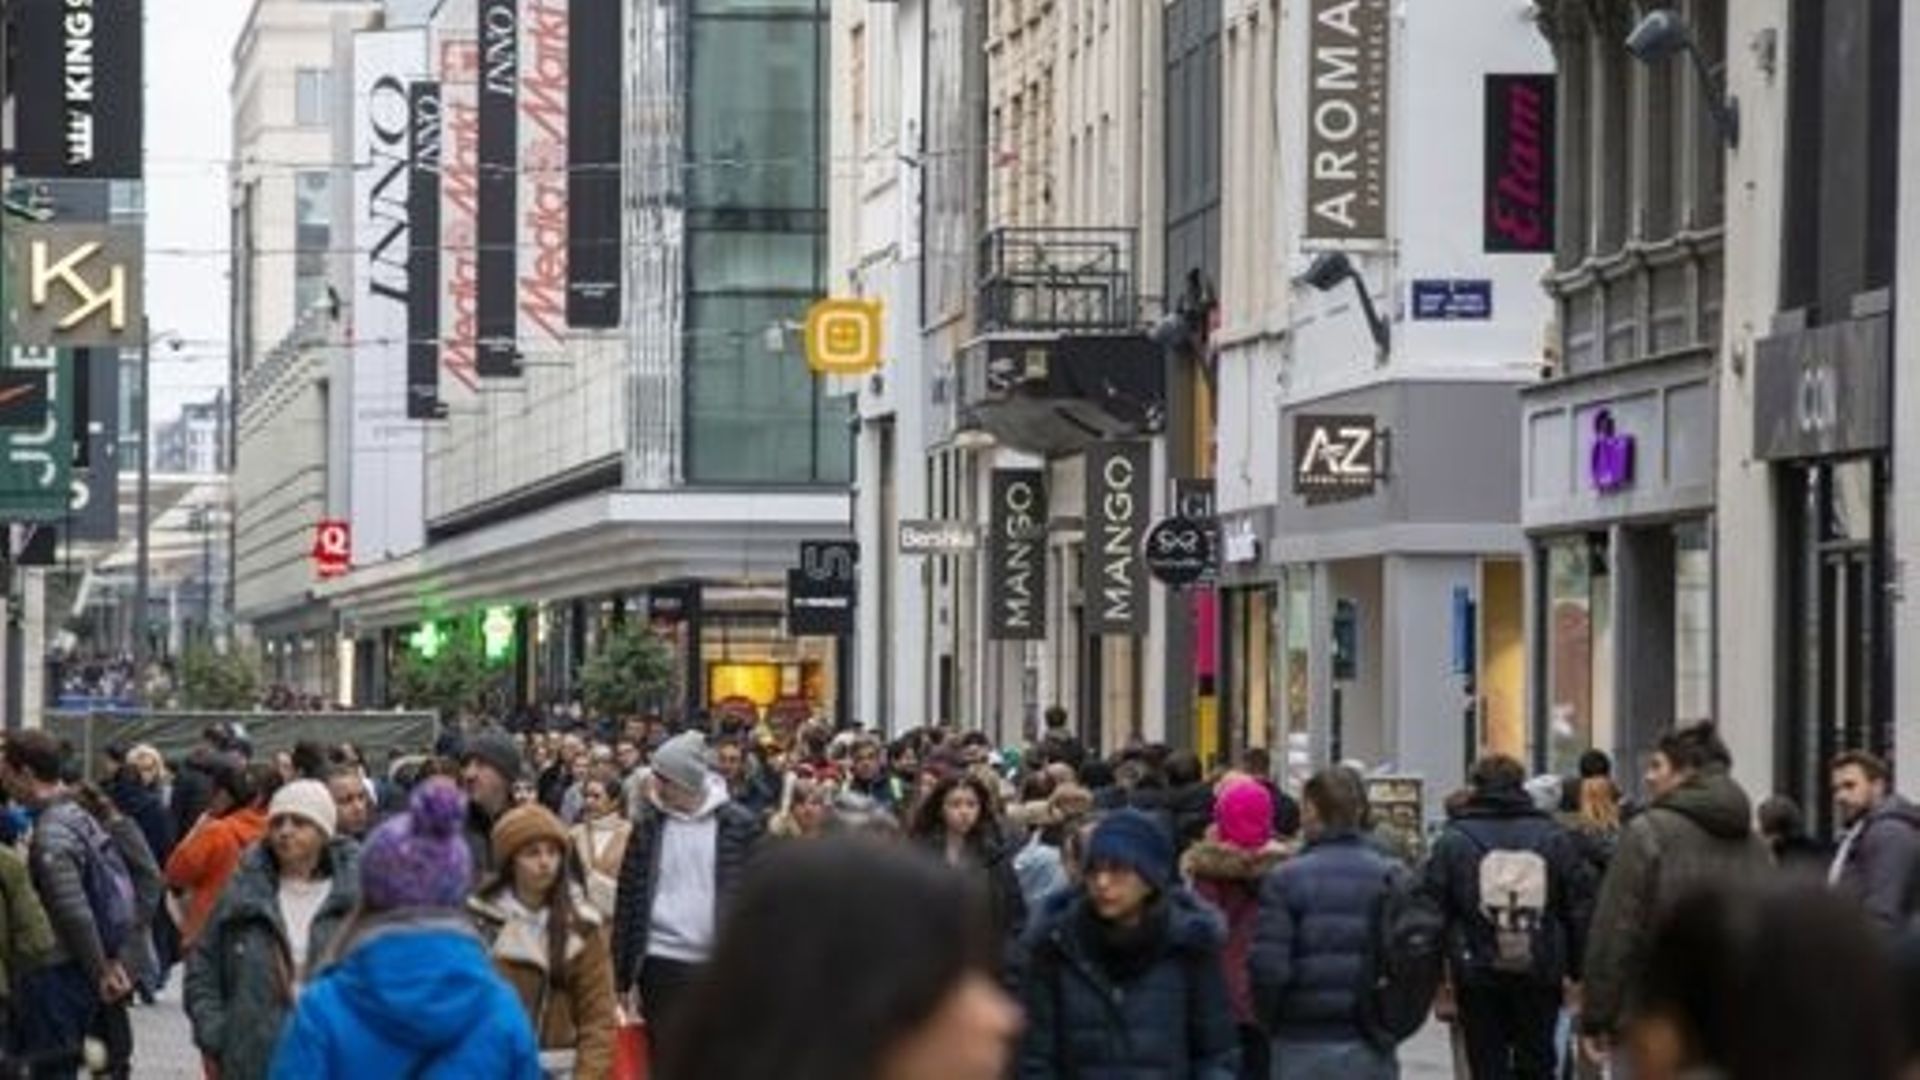 La photo d'illustration montre des personnes dans la rue commerçante - Rue Neuve à Bruxelles, le samedi 18 février 2023.